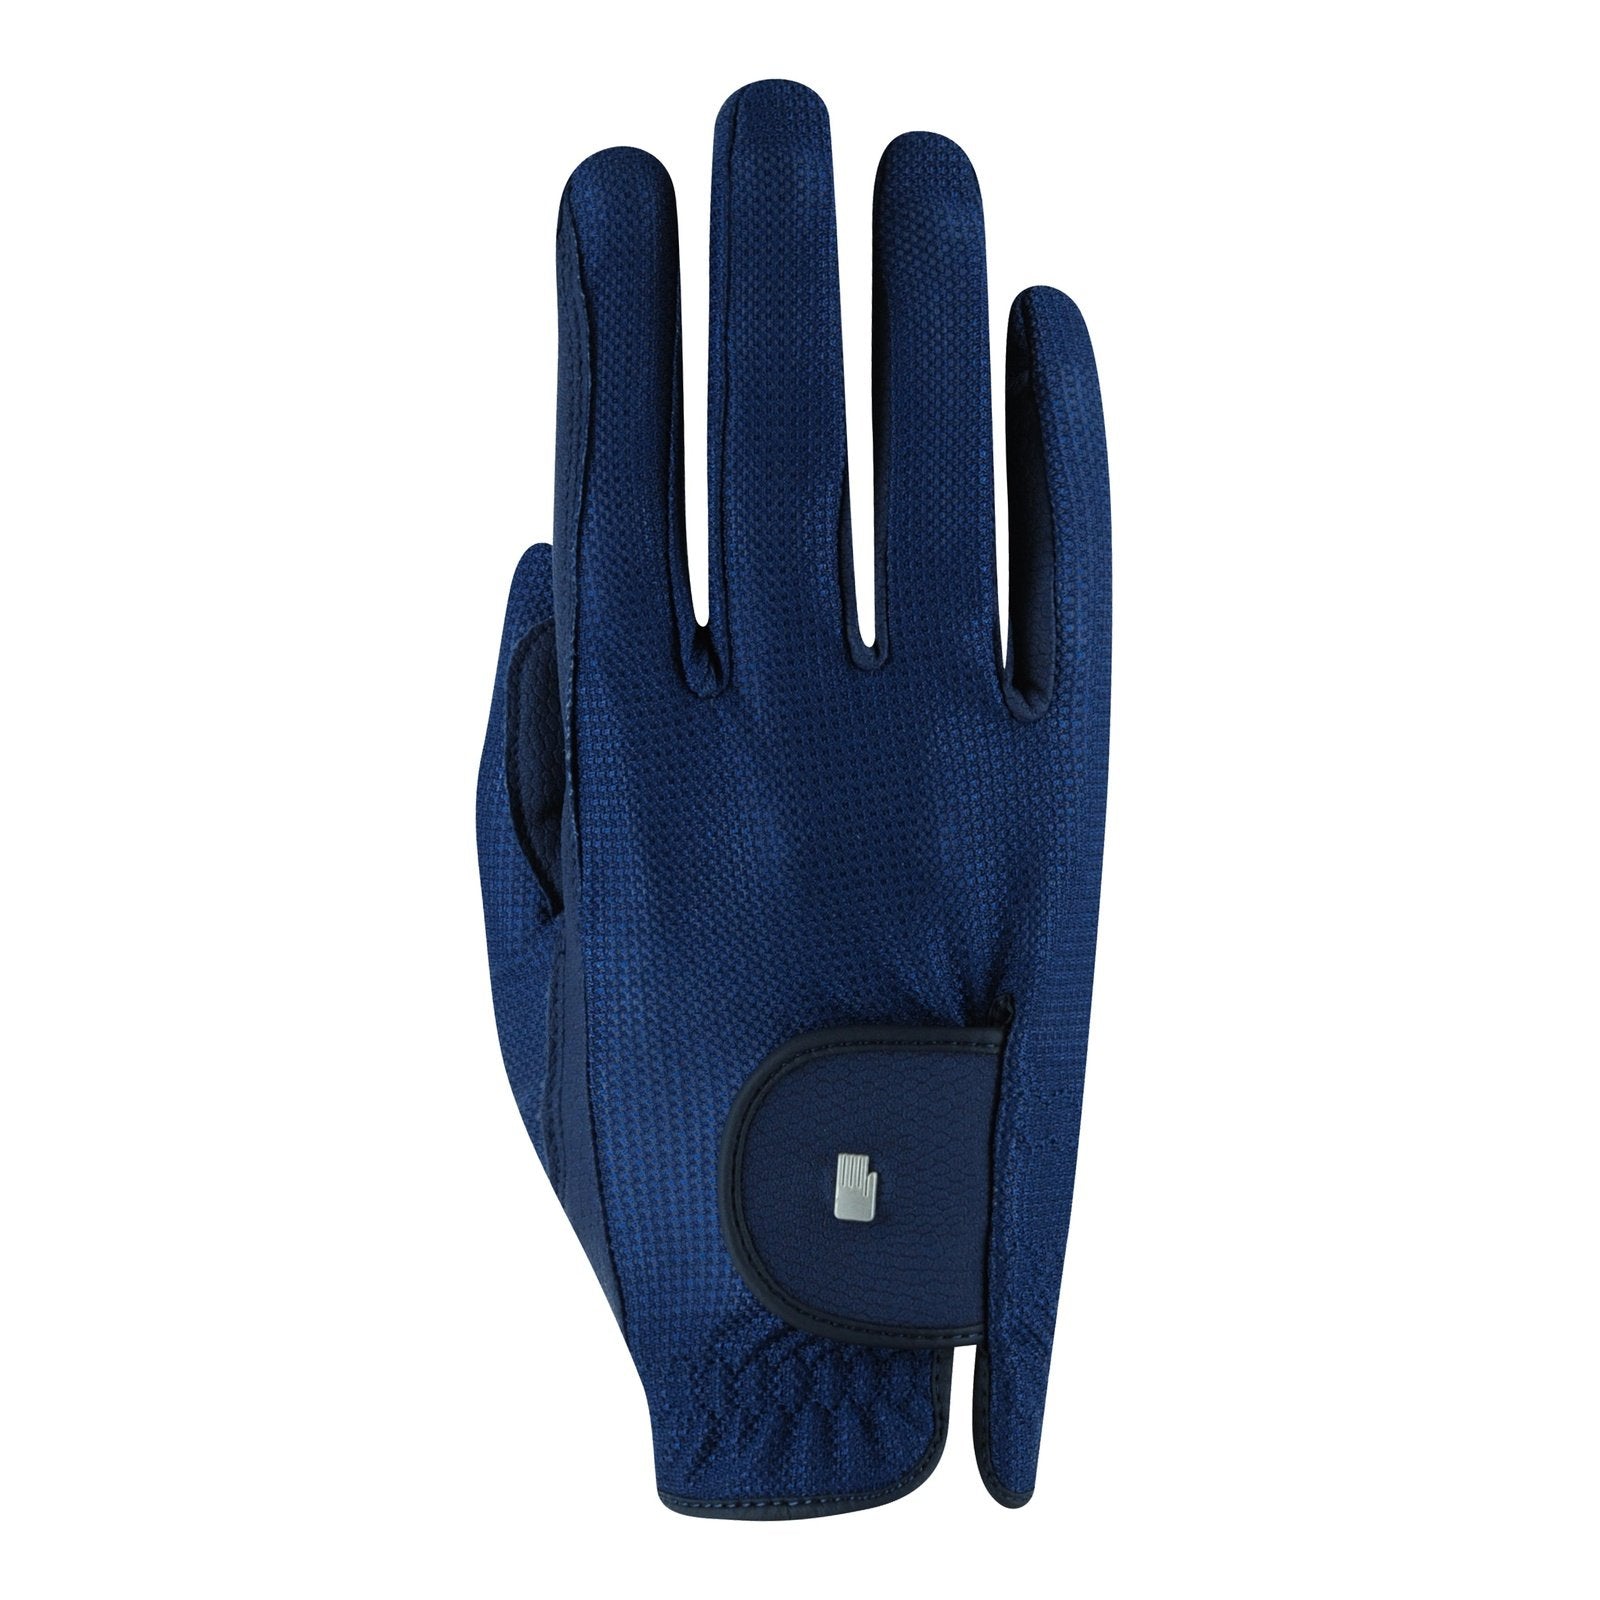 Roeckl Handschuhe Roeck-Grip Lite bei SP-Reitsport